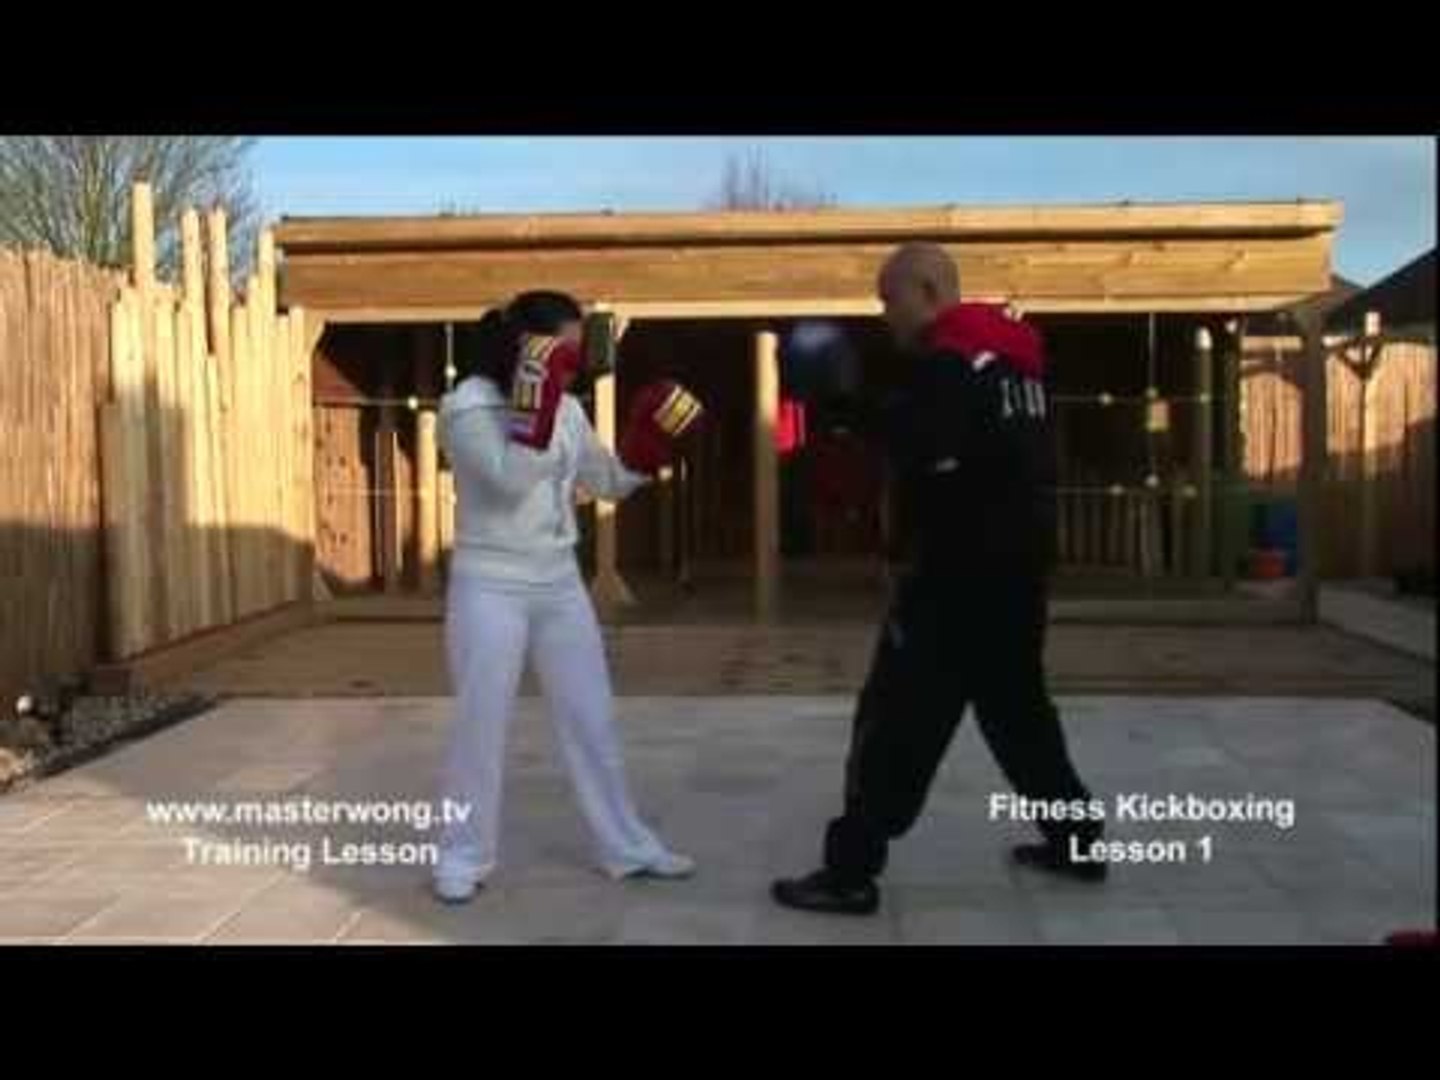 Kickboxing basics - Lesson 1 Basic Jab